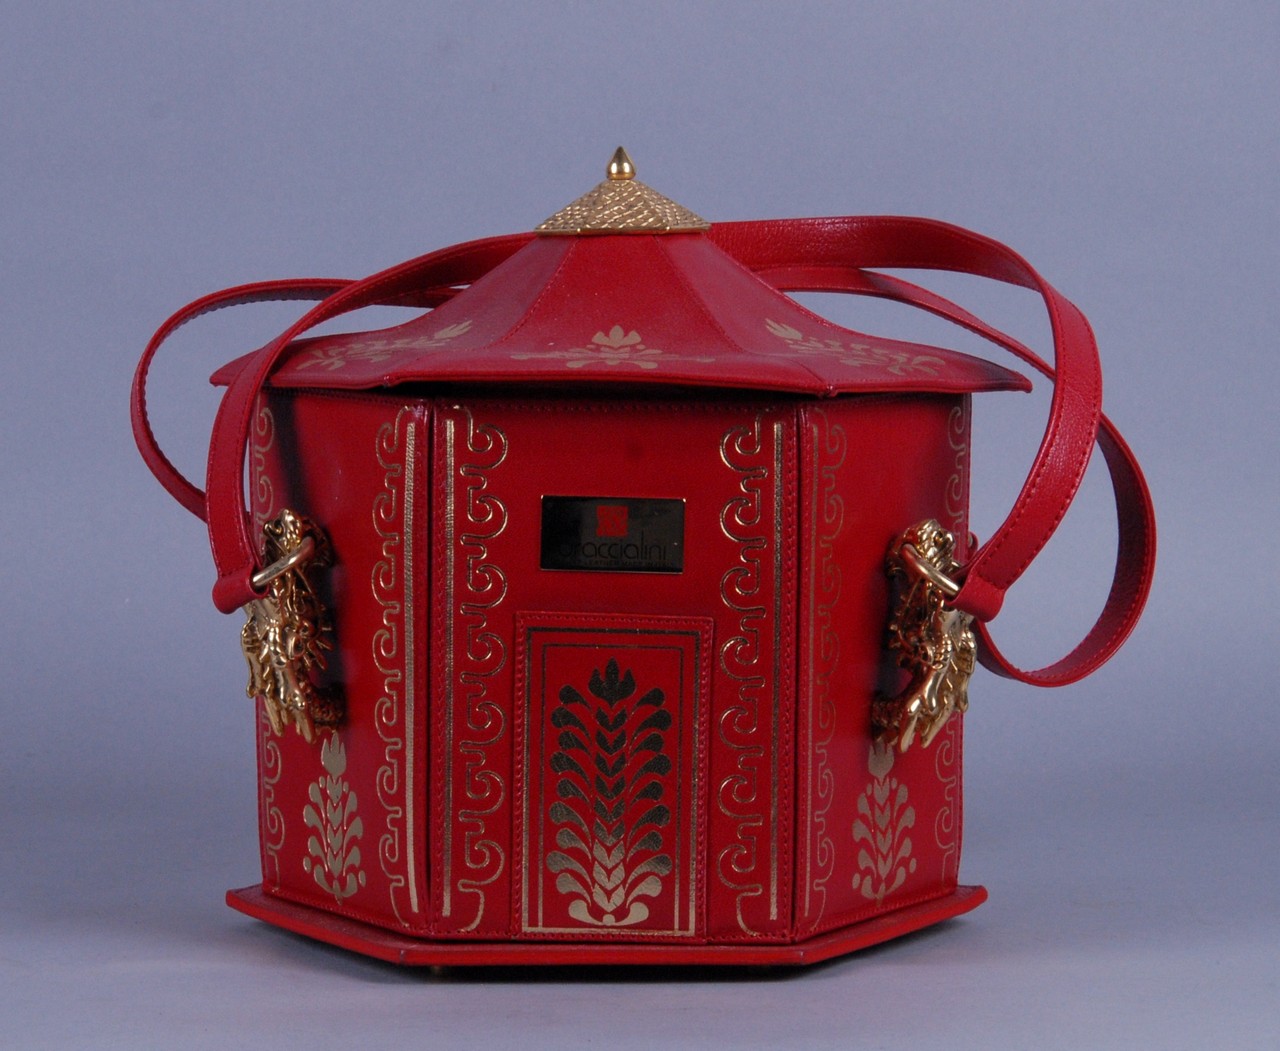 BRACCIALINI. Borsa modello 'Pagoda' in pelle rossa. Collezione 'Temi 2006'.  Mis. Lung. cm. 24 - Image 2 of 3